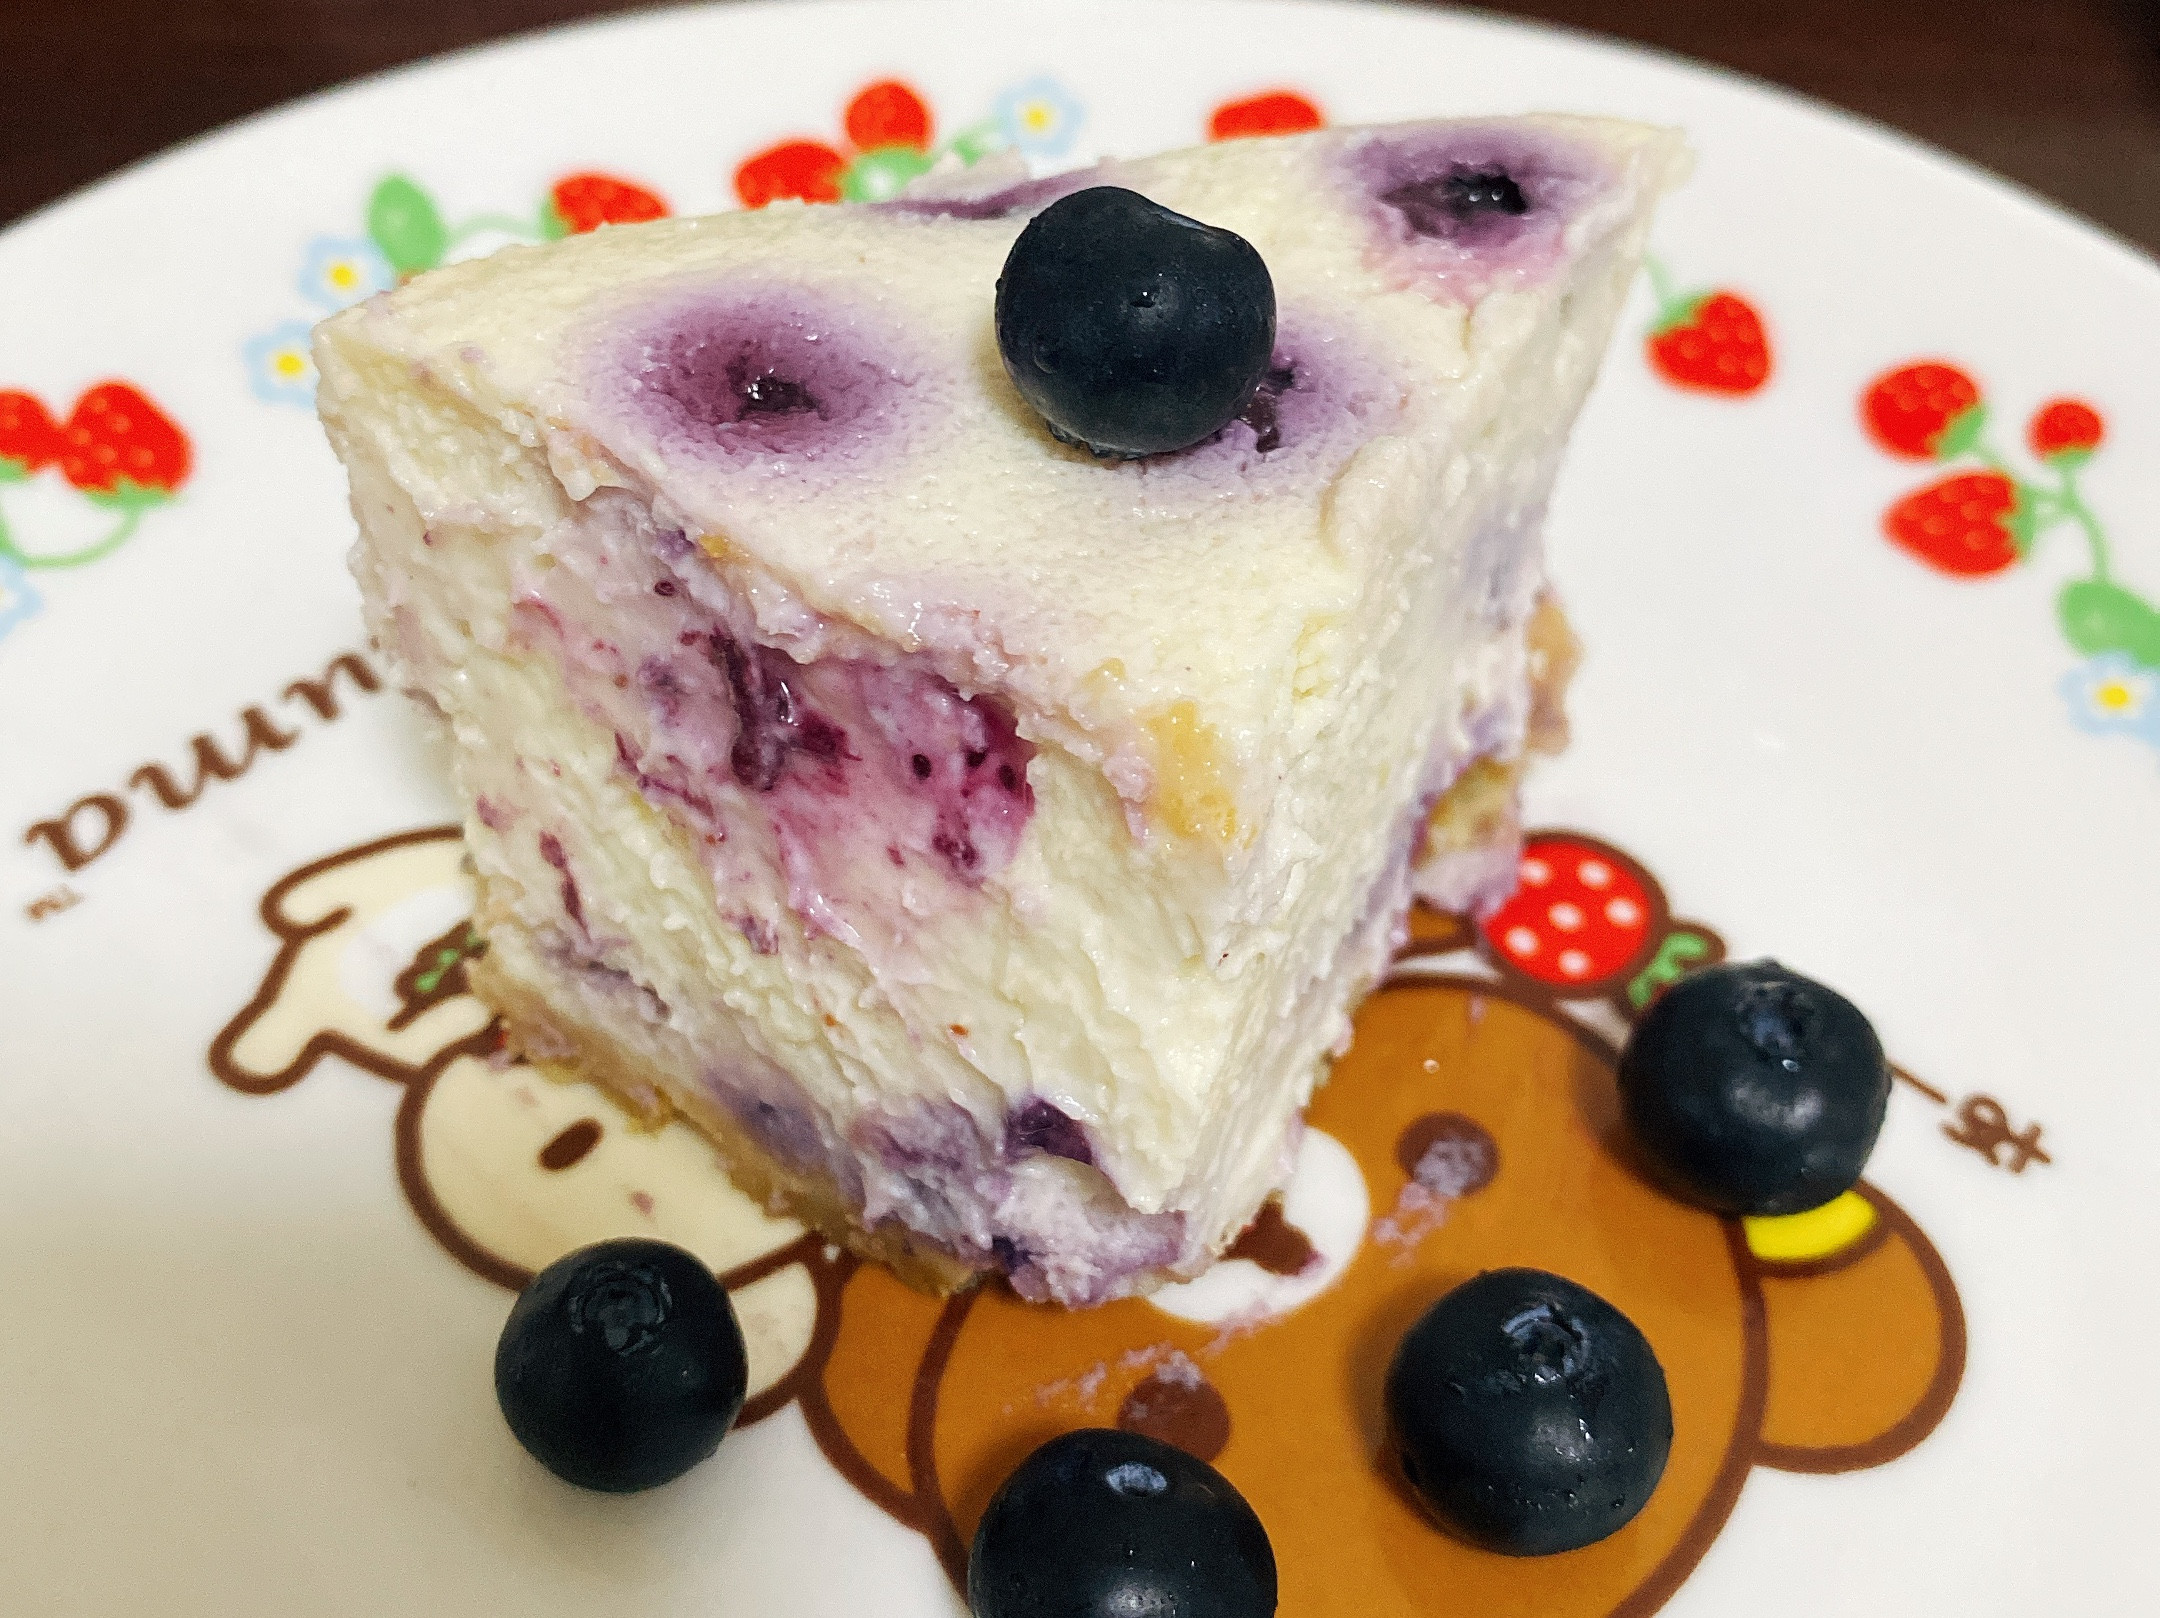 藍莓乳酪蛋糕 電子鍋版/電鍋版